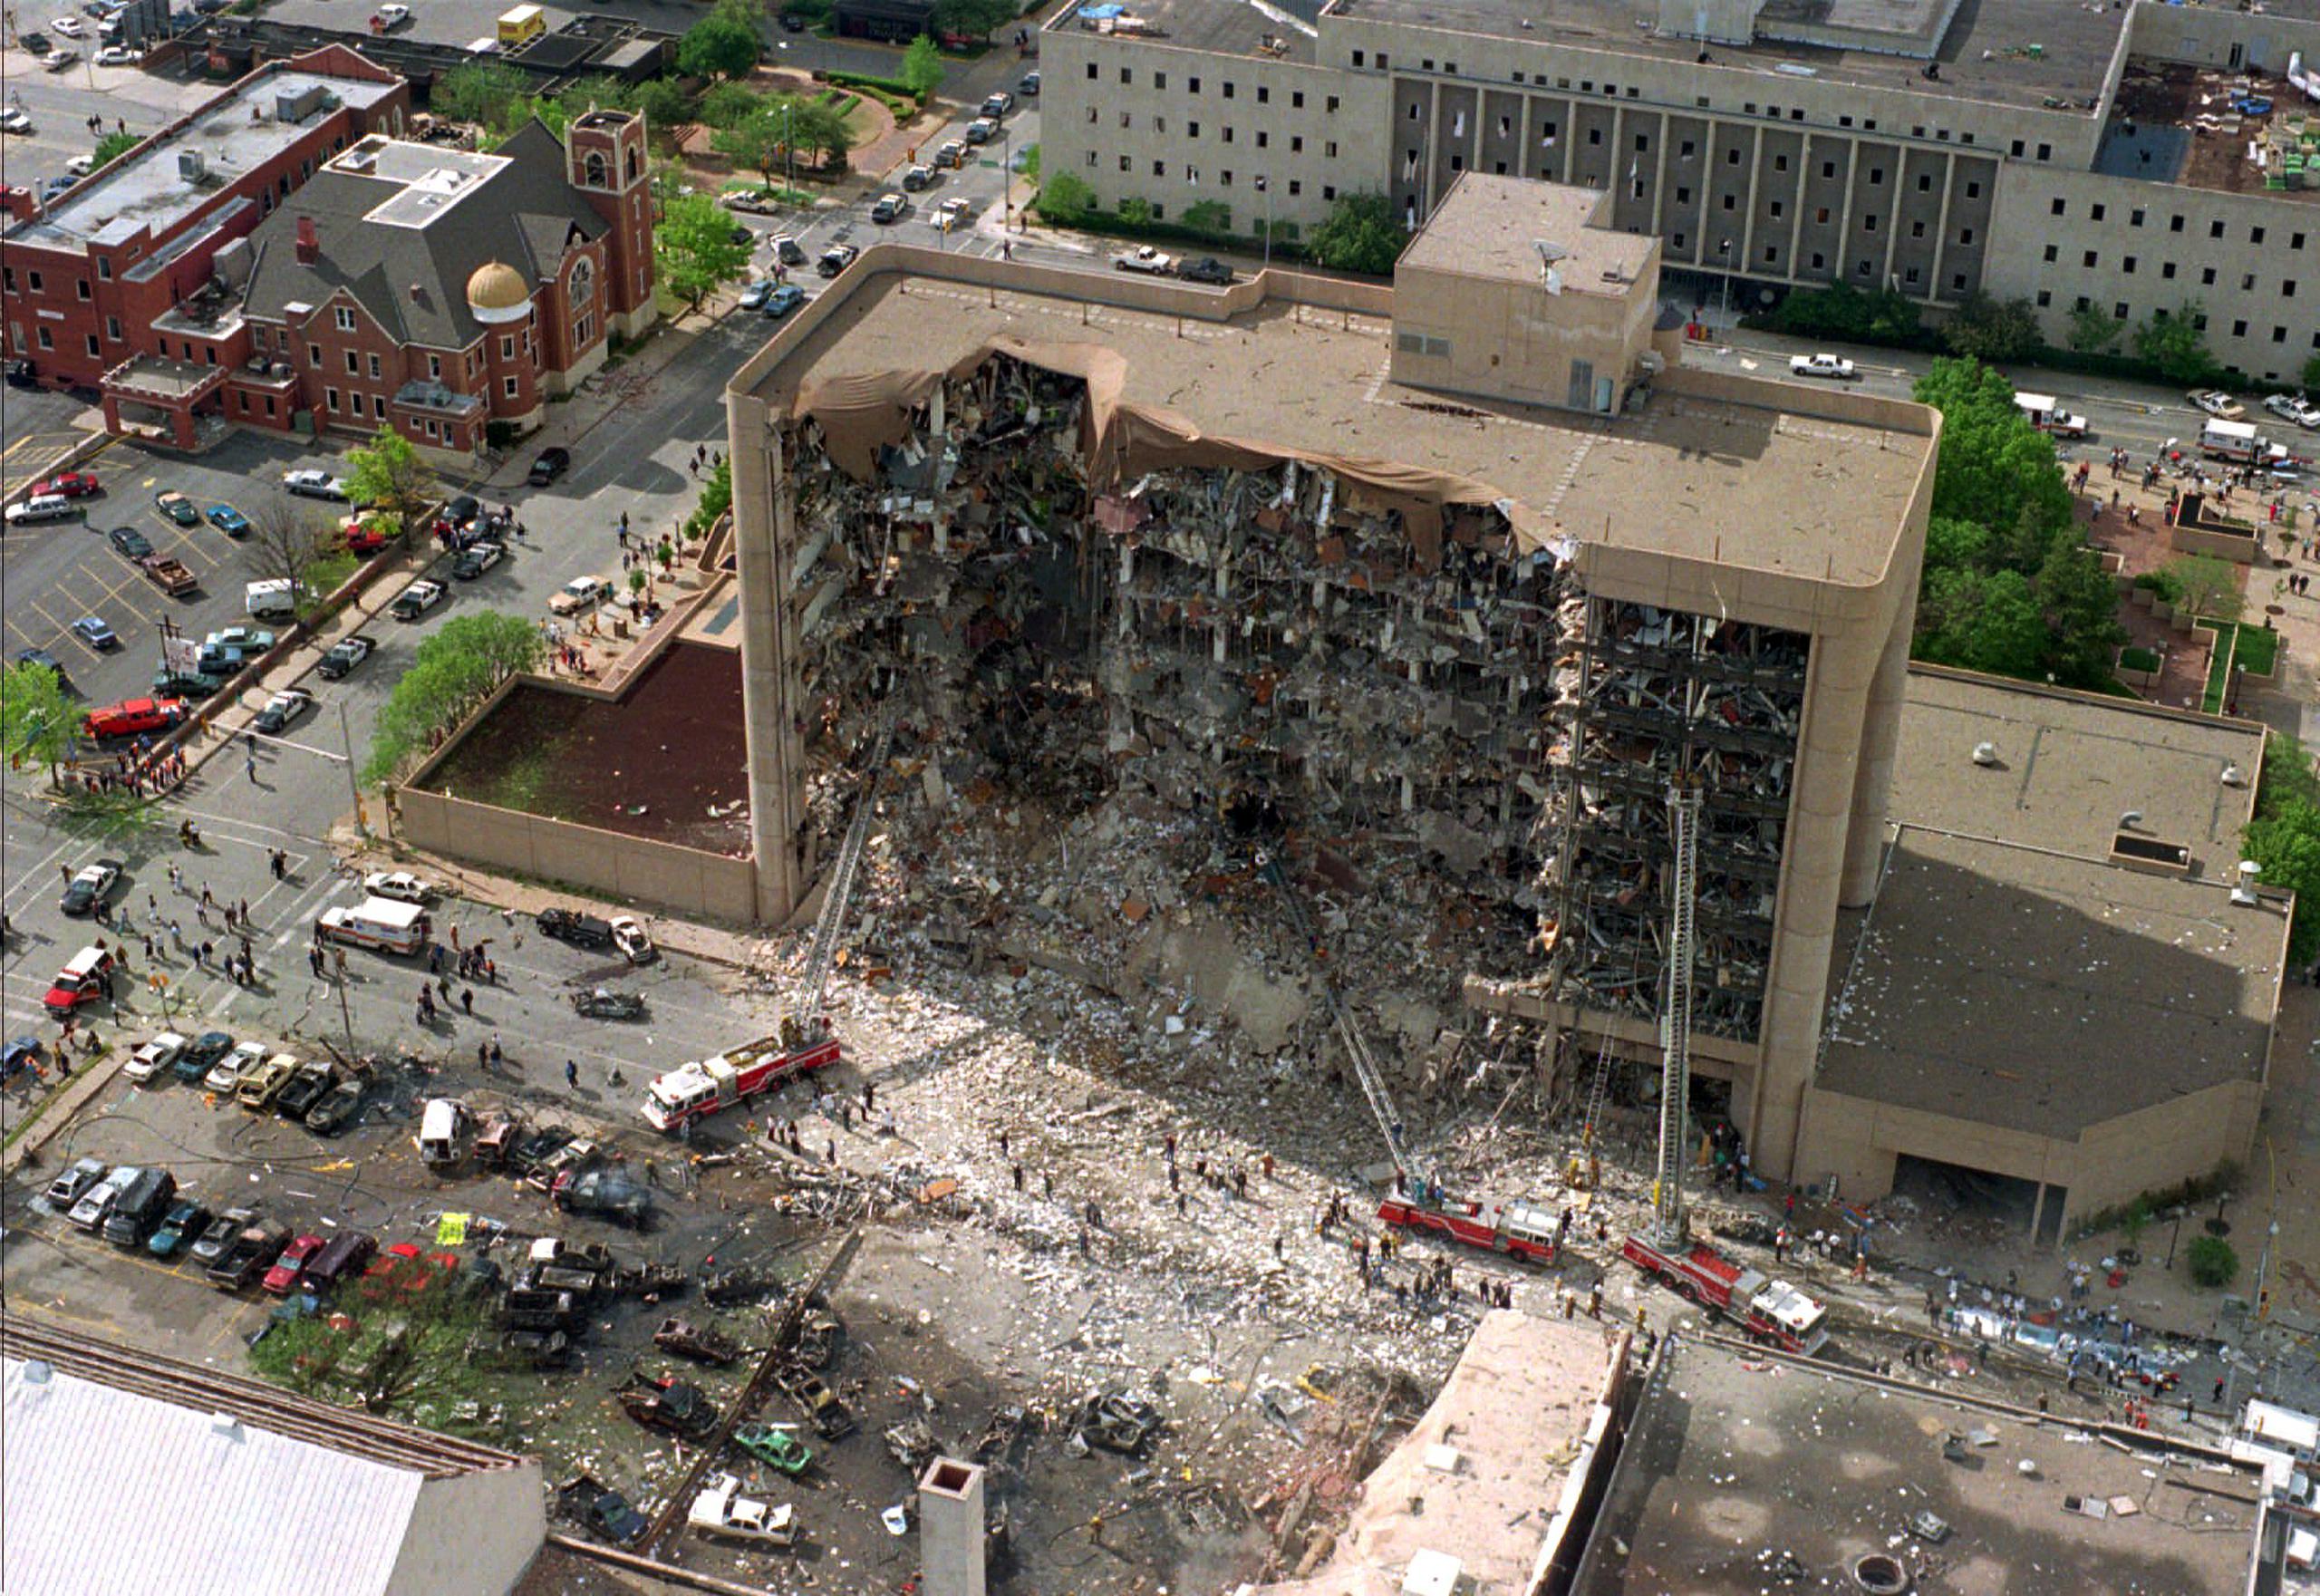 El atentado contra el edificio federal Alfred Murrah de la ciudad de Oklahoma, ocurrió el 19 de abril de 1995, en el segundo aniversario del asedio federal contra el campamento de la secta de los Davidianos en Waco Texas, que culminó con 78 muertes.